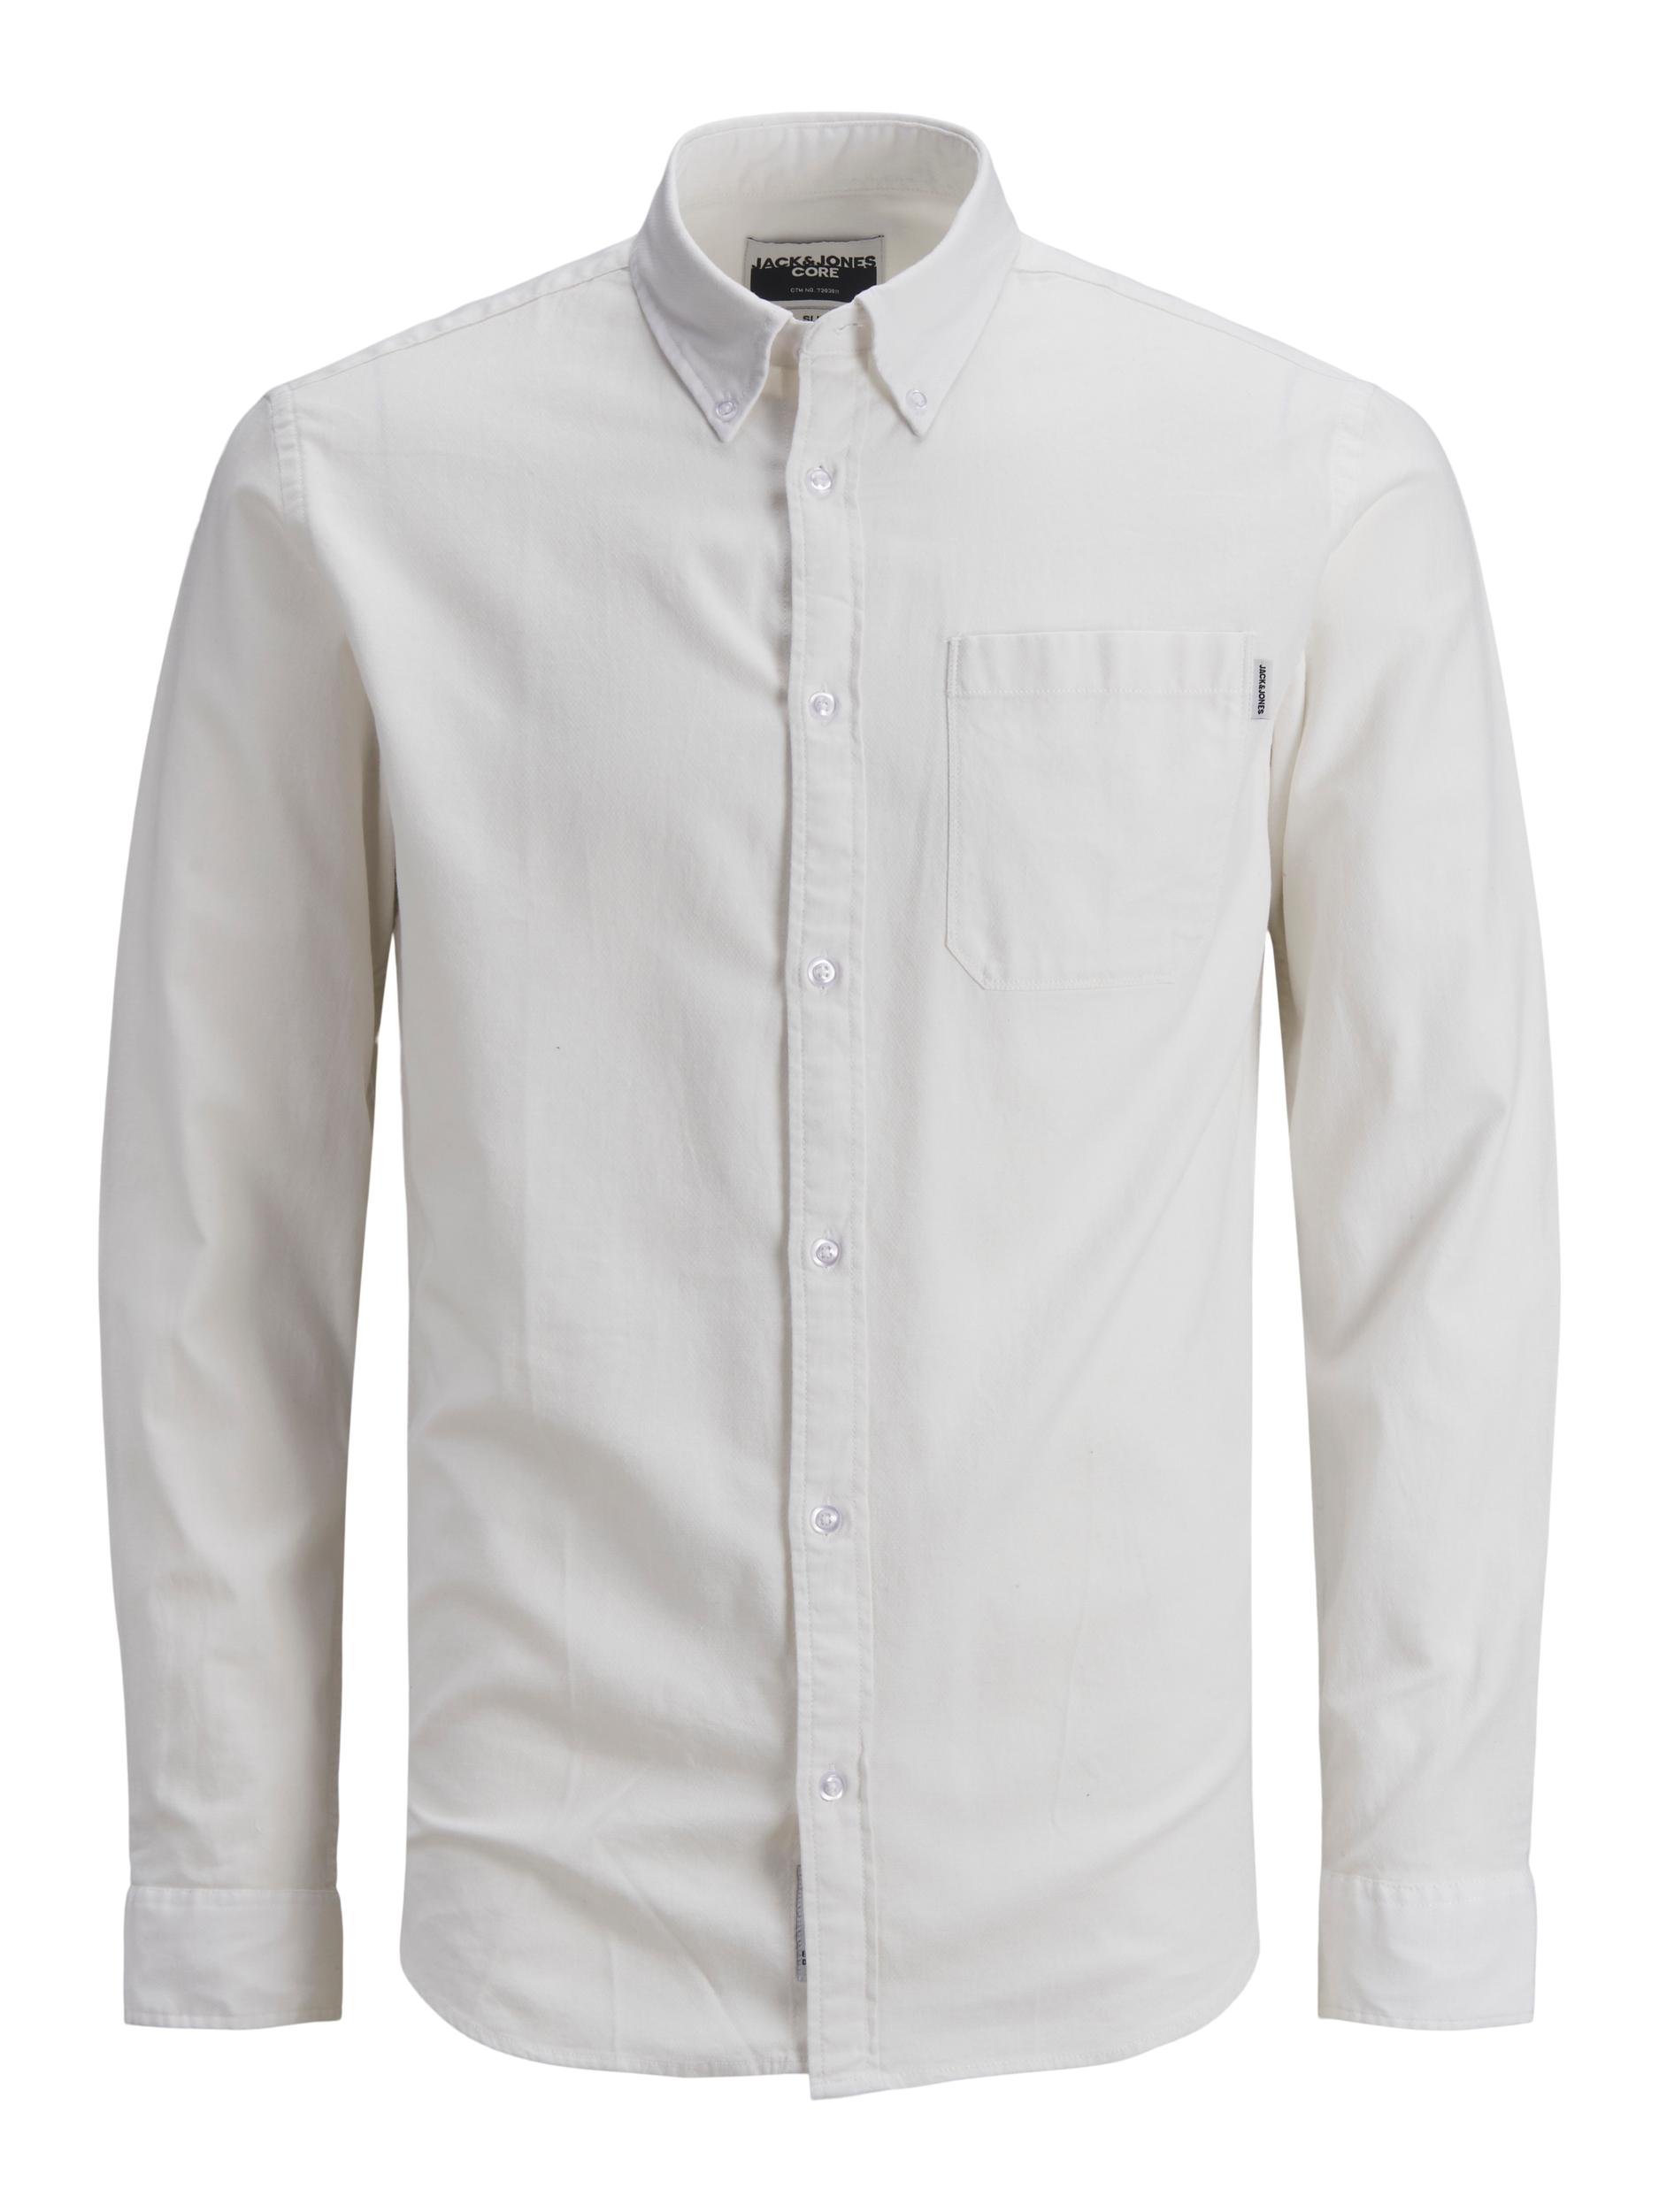 Mężczyźni Odzież JACK & JONES Koszula MIX w kolorze Białym 